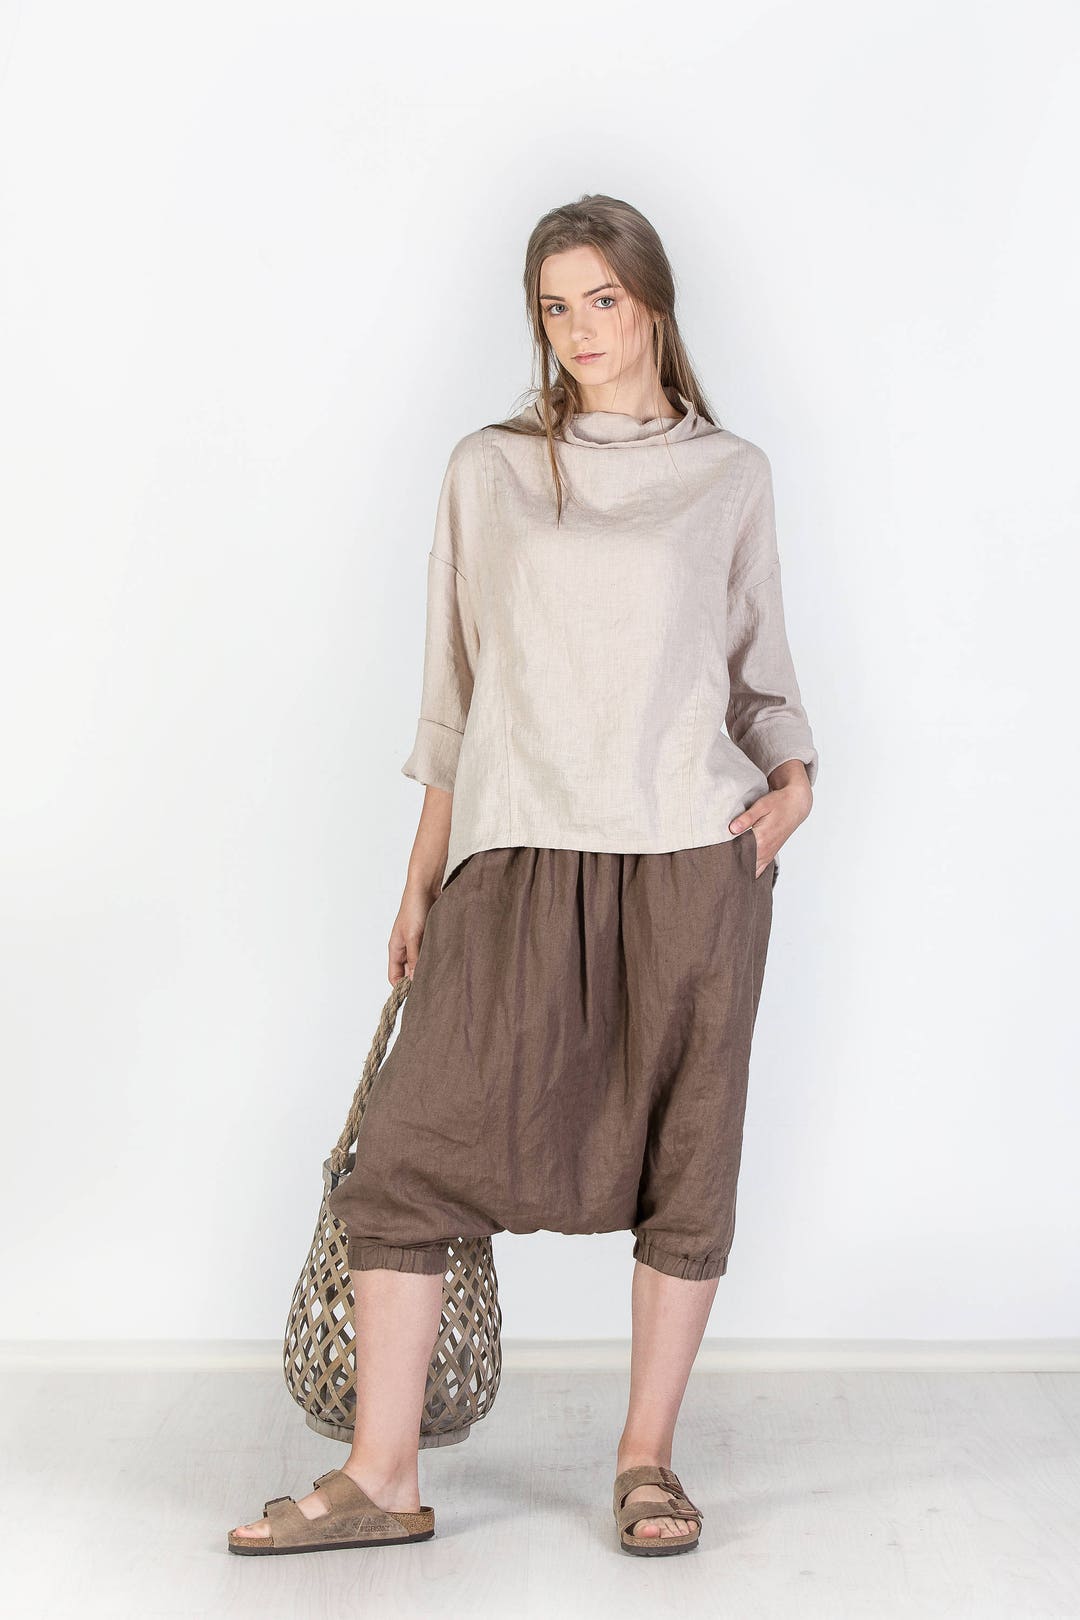 Linen Blouse / Linen Top / 100% Linen Shirt / Women Linen - Etsy